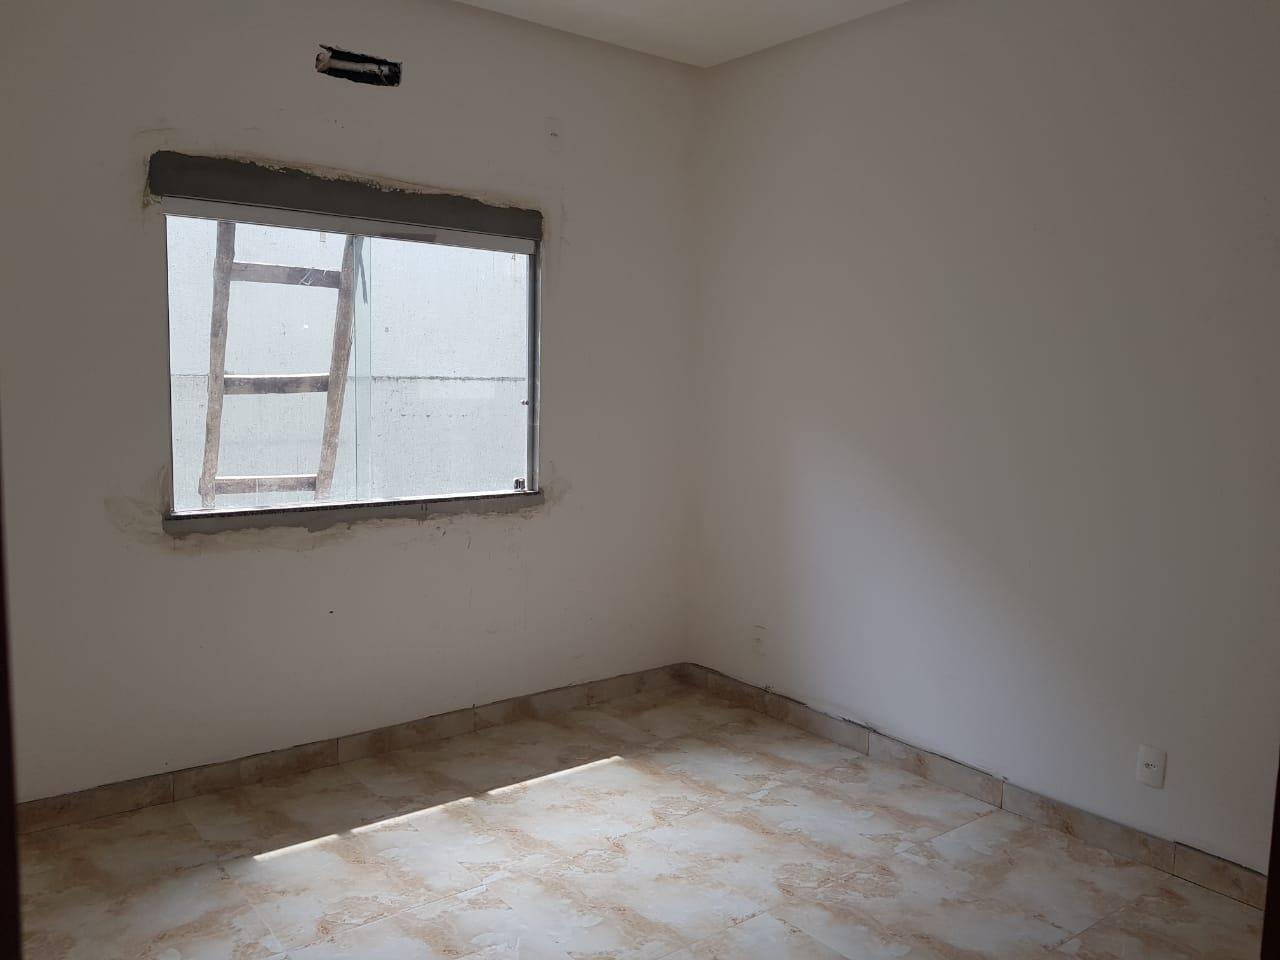 Casa com 6 dormitórios à venda, 600 m² por RS 650.000,00 - Dom Pedro - Manaus-AM